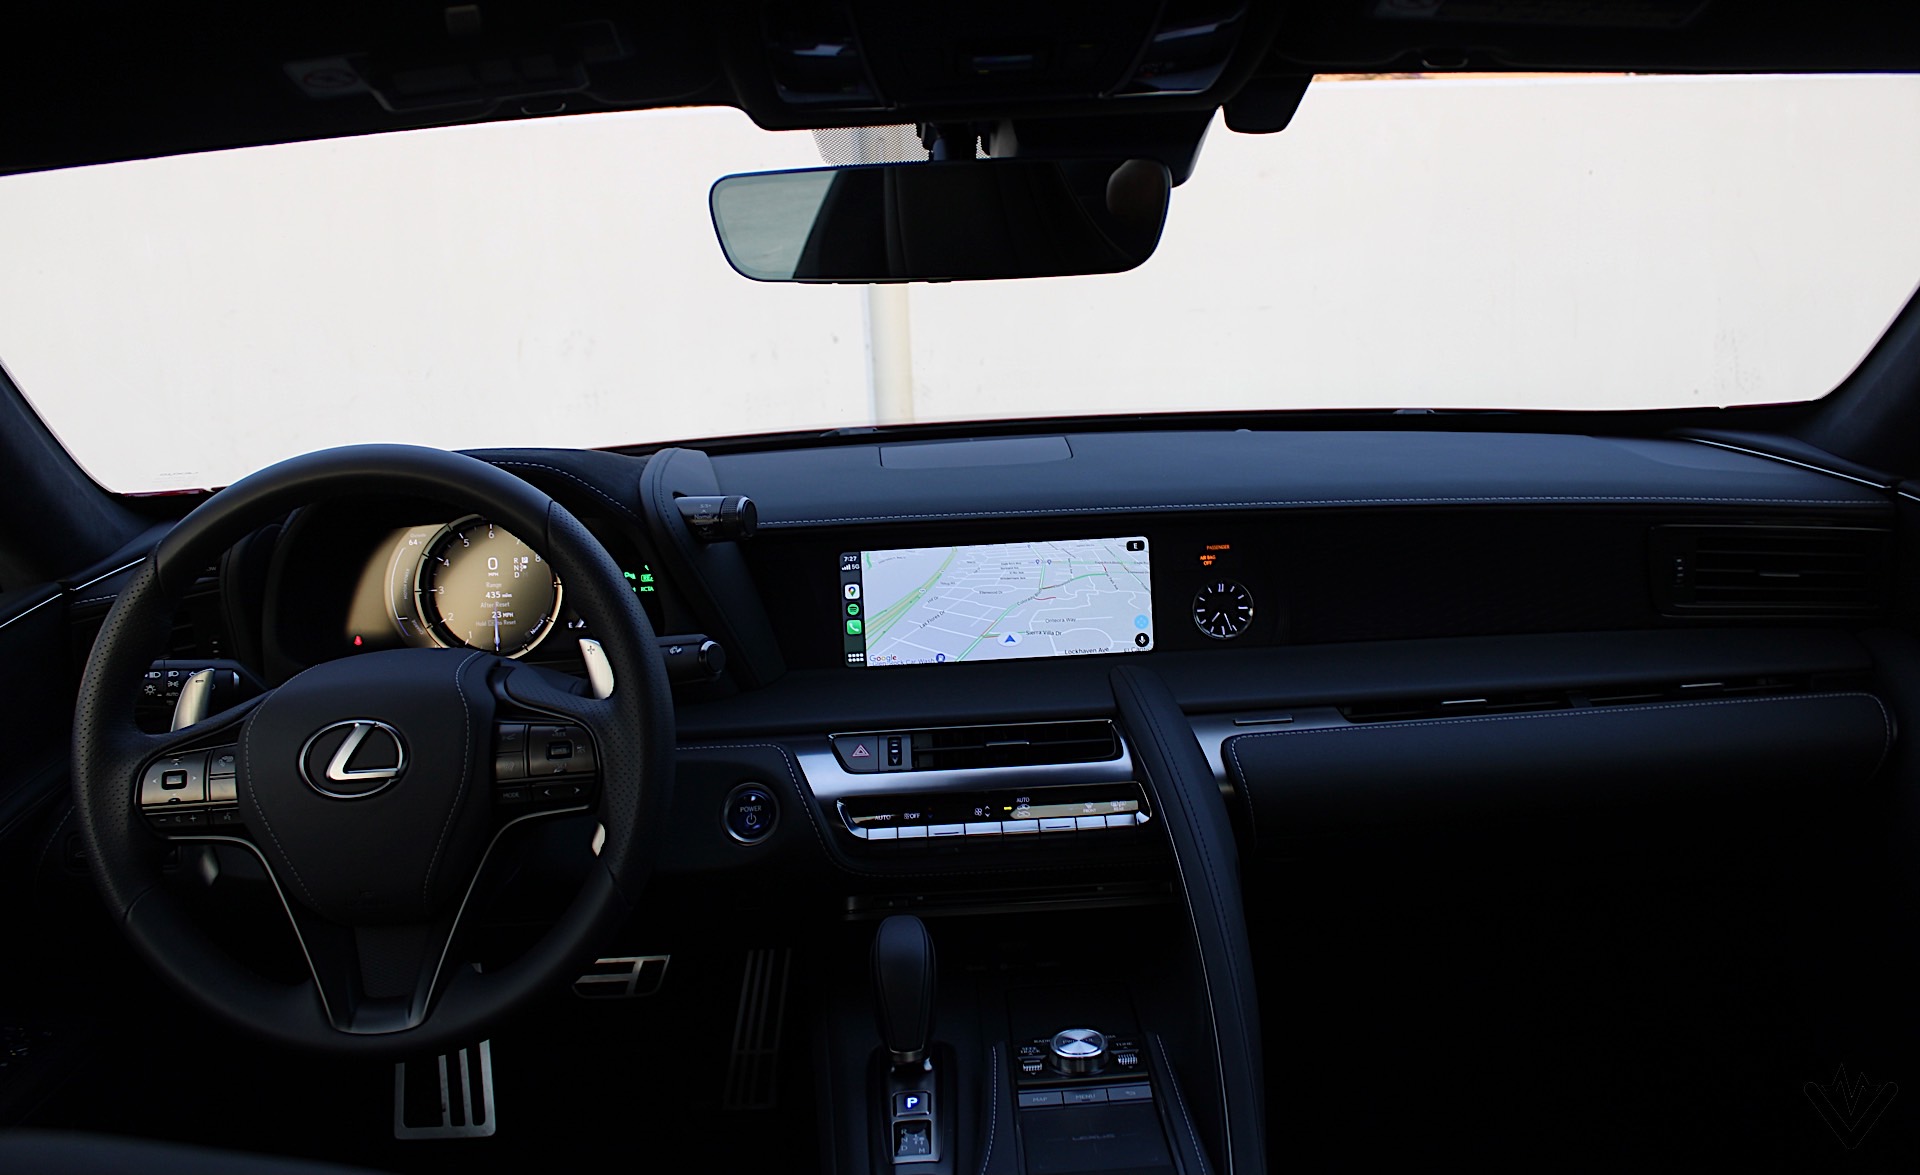 2021 Lexus LC 500h interior 01 1